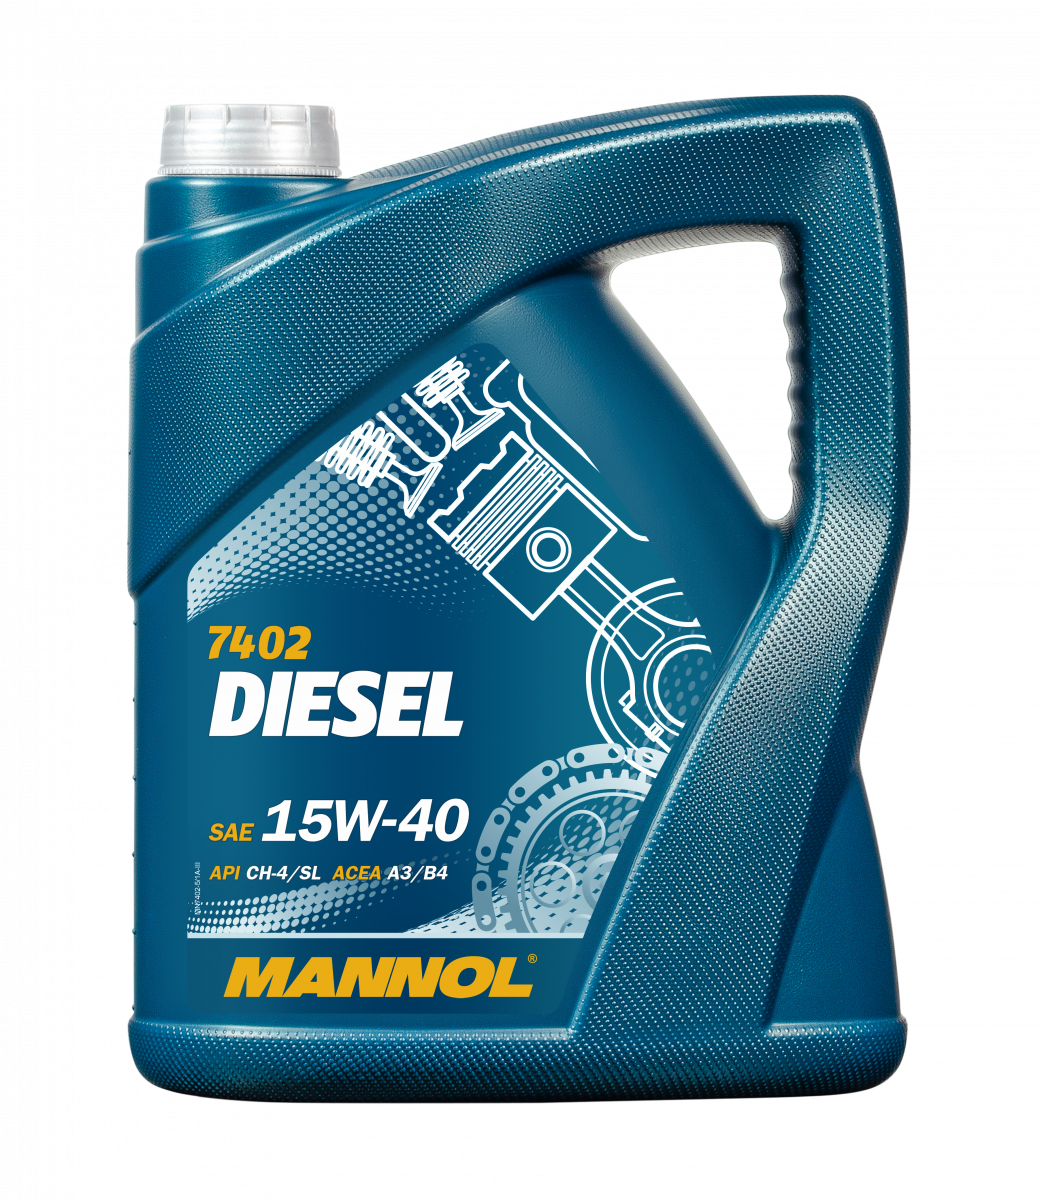 7402 Diesel 15W-40 5L, 1206, масло минеральное, Mannol